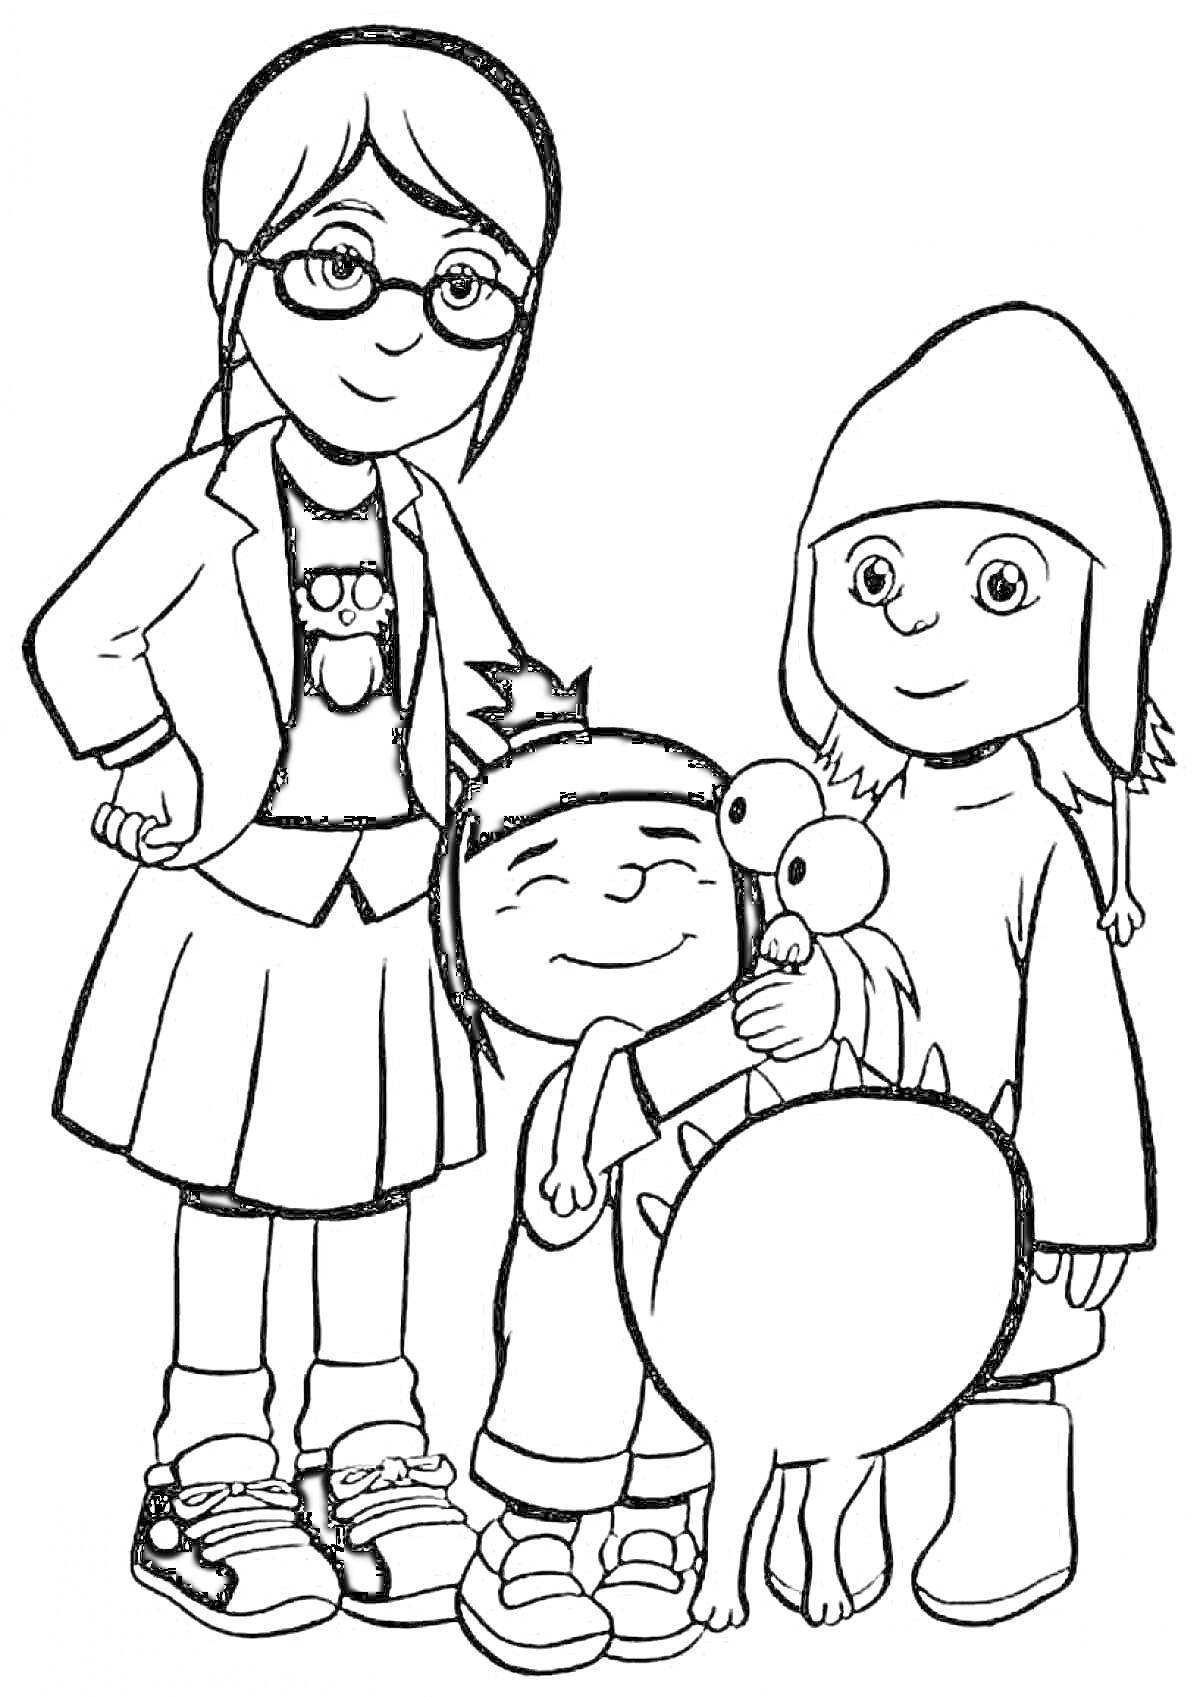 Раскраска Три девочки в очках, кофте и юбке, зимней шапке и свитере с монстром на руках